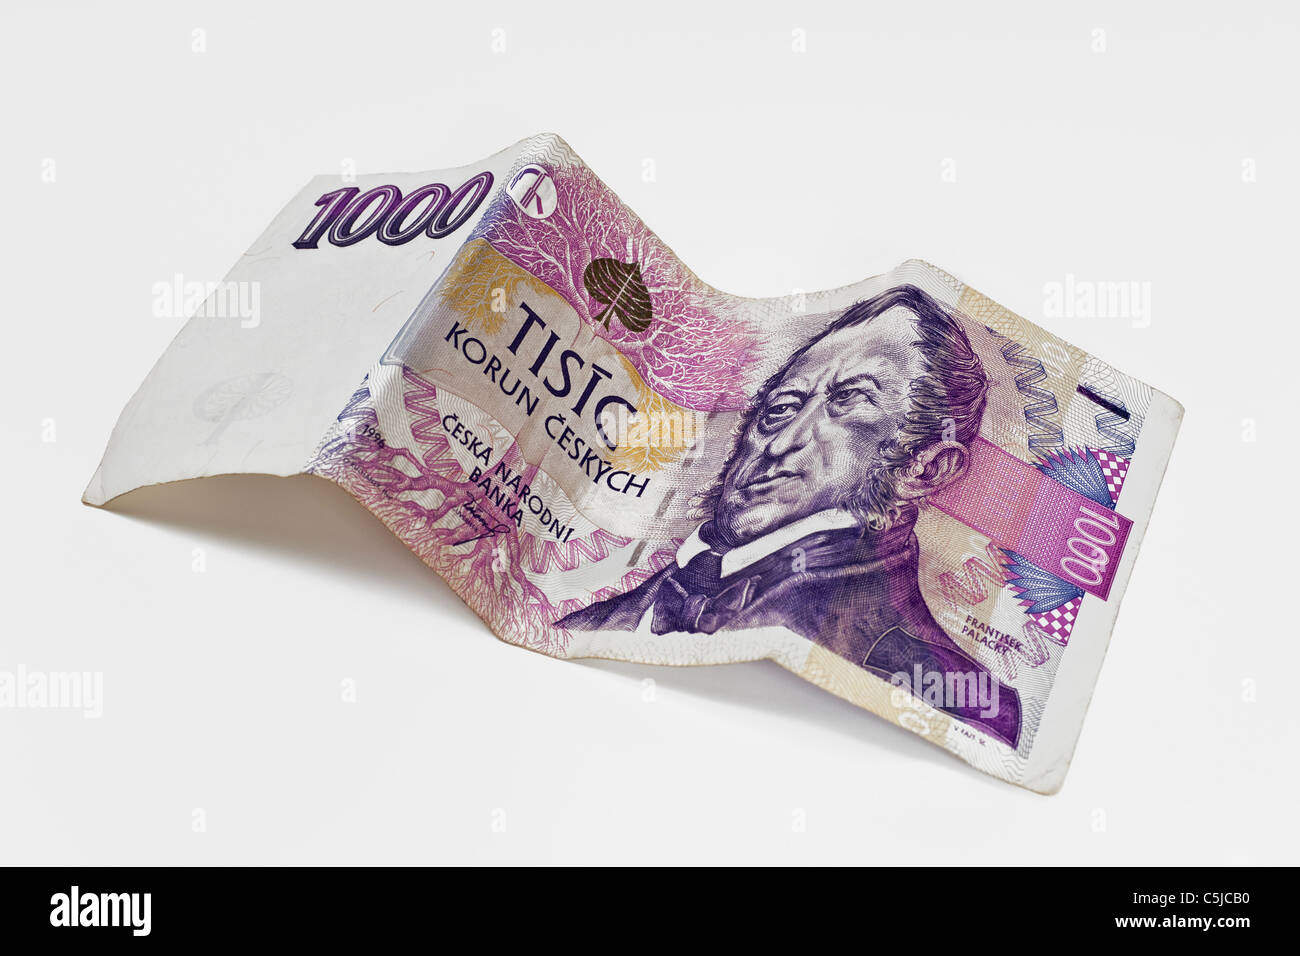 Detailansicht einer tschechischen 1000 Kronen Banknote | Detail photo of a czech 1000 koruna Banknote Stock Photo